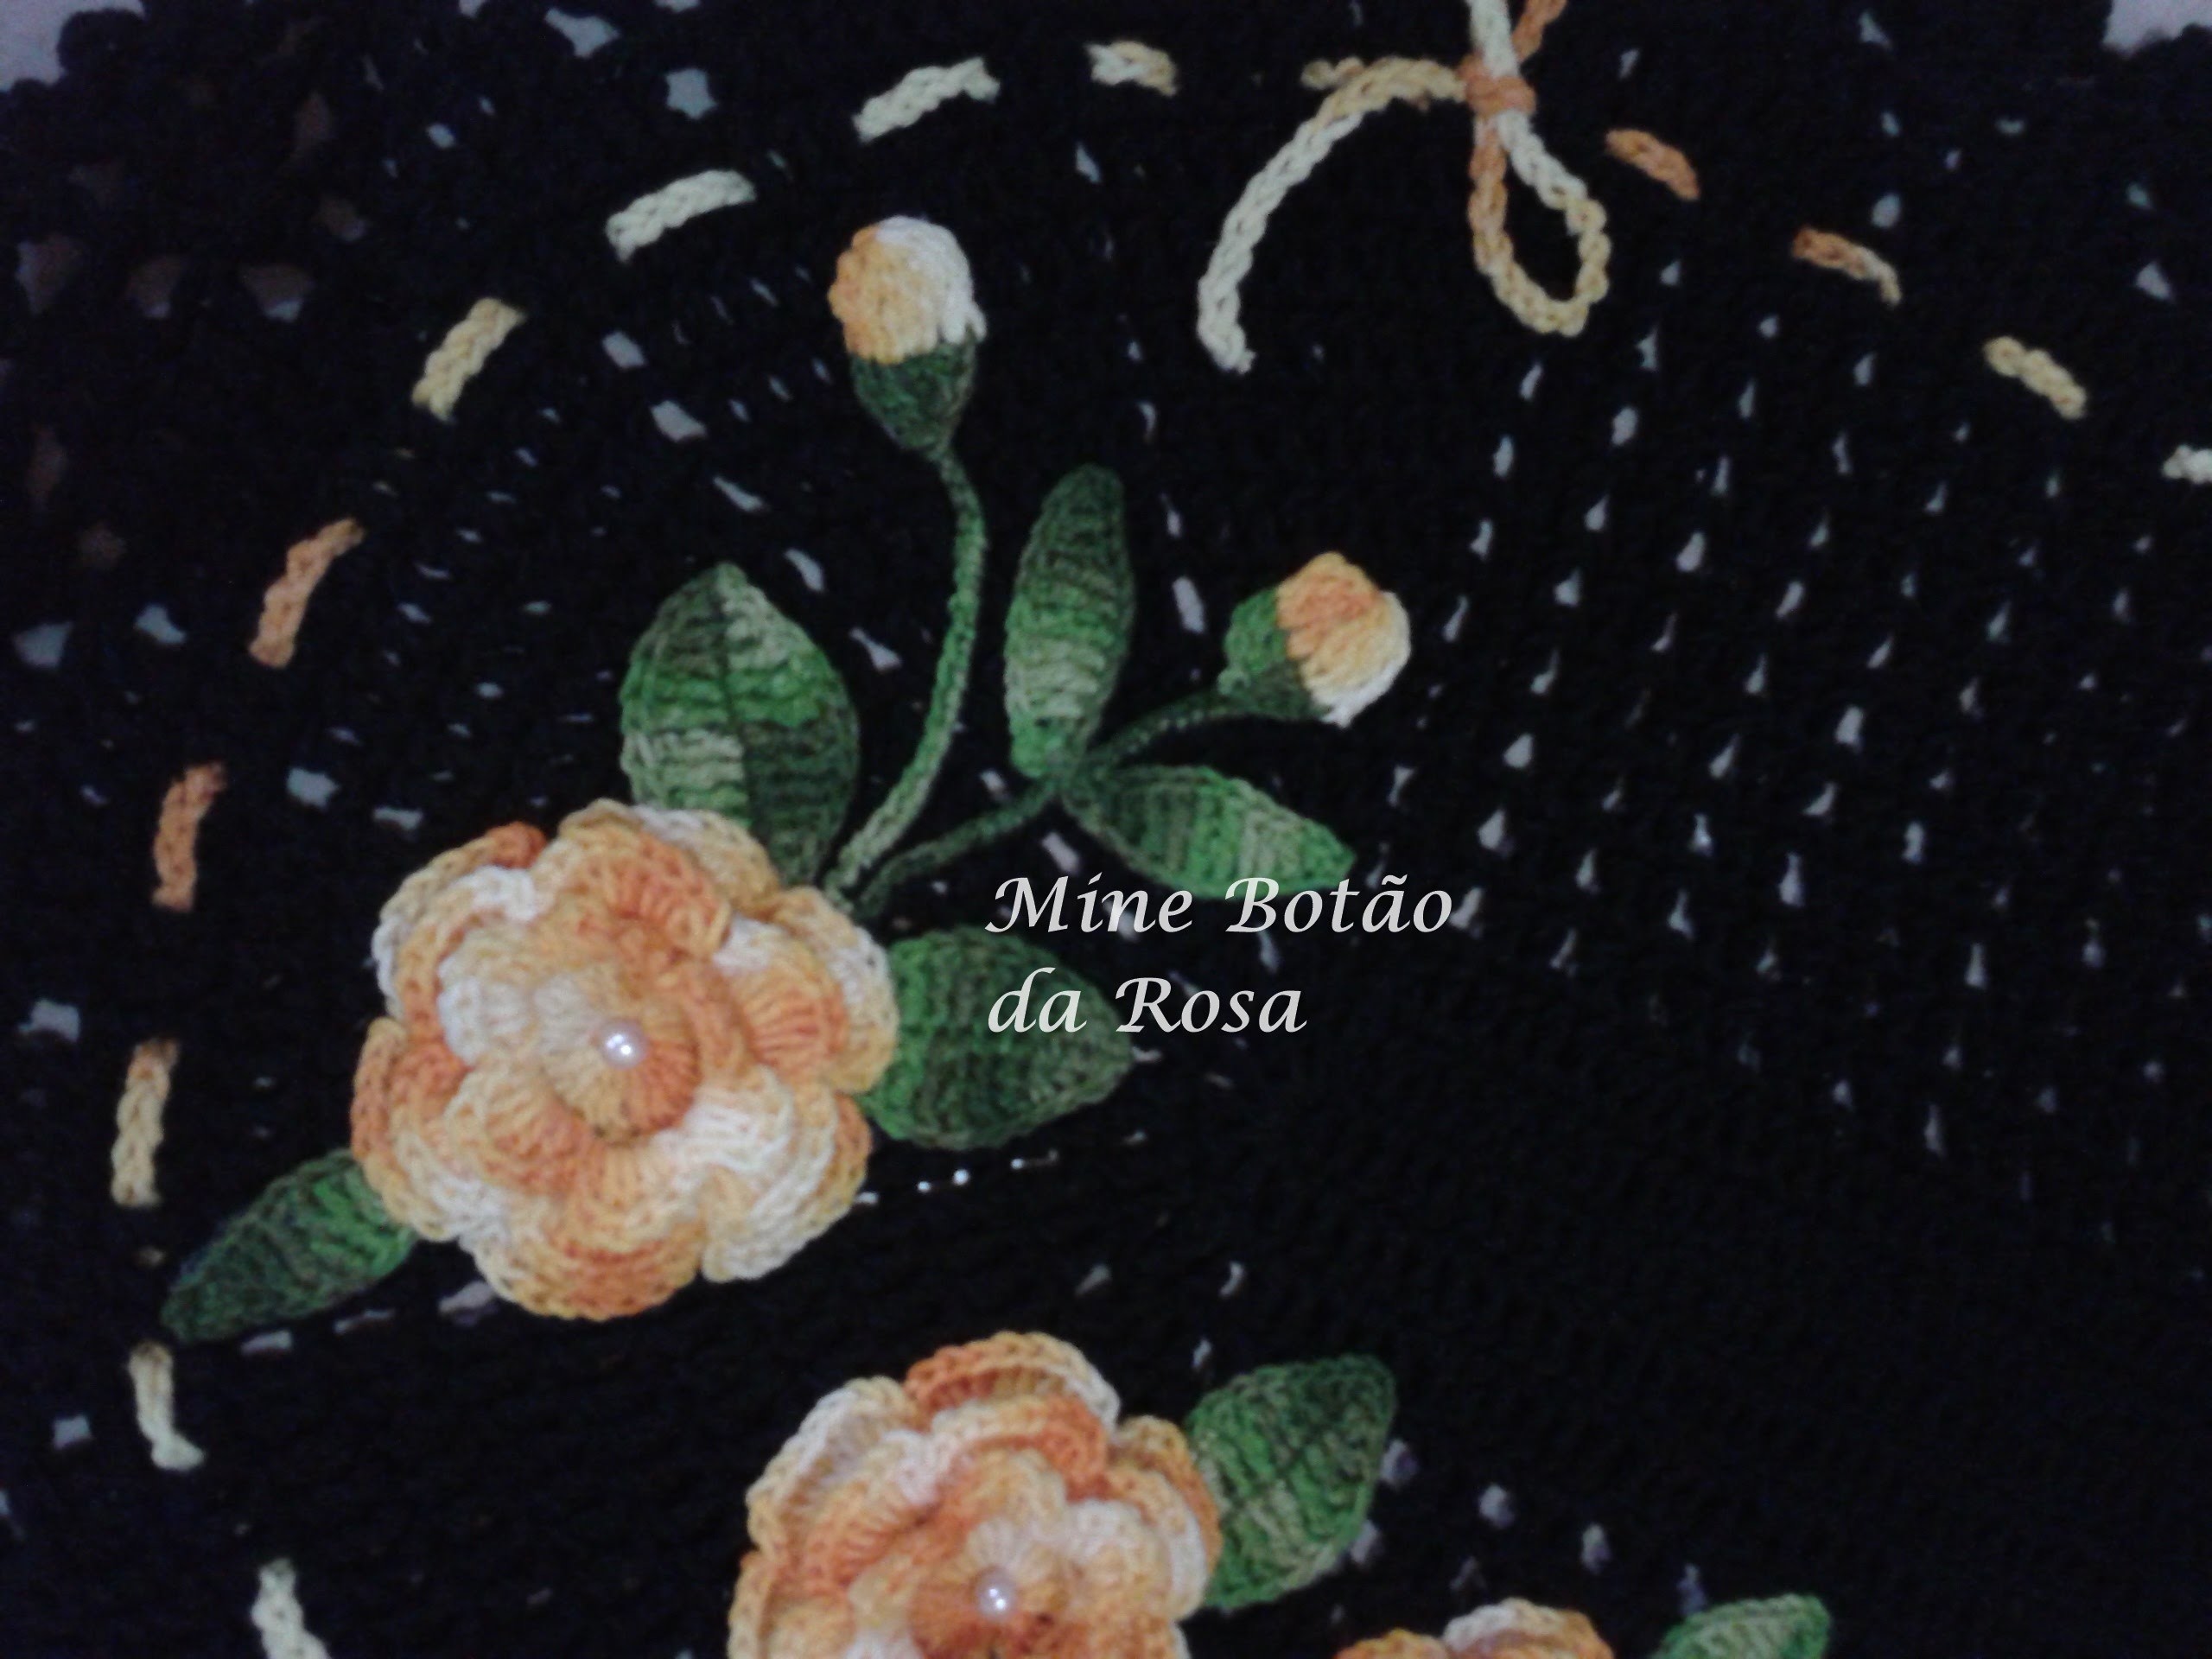 Mine Botão da Rosa #Coleção "Minhas flores em Crochê"